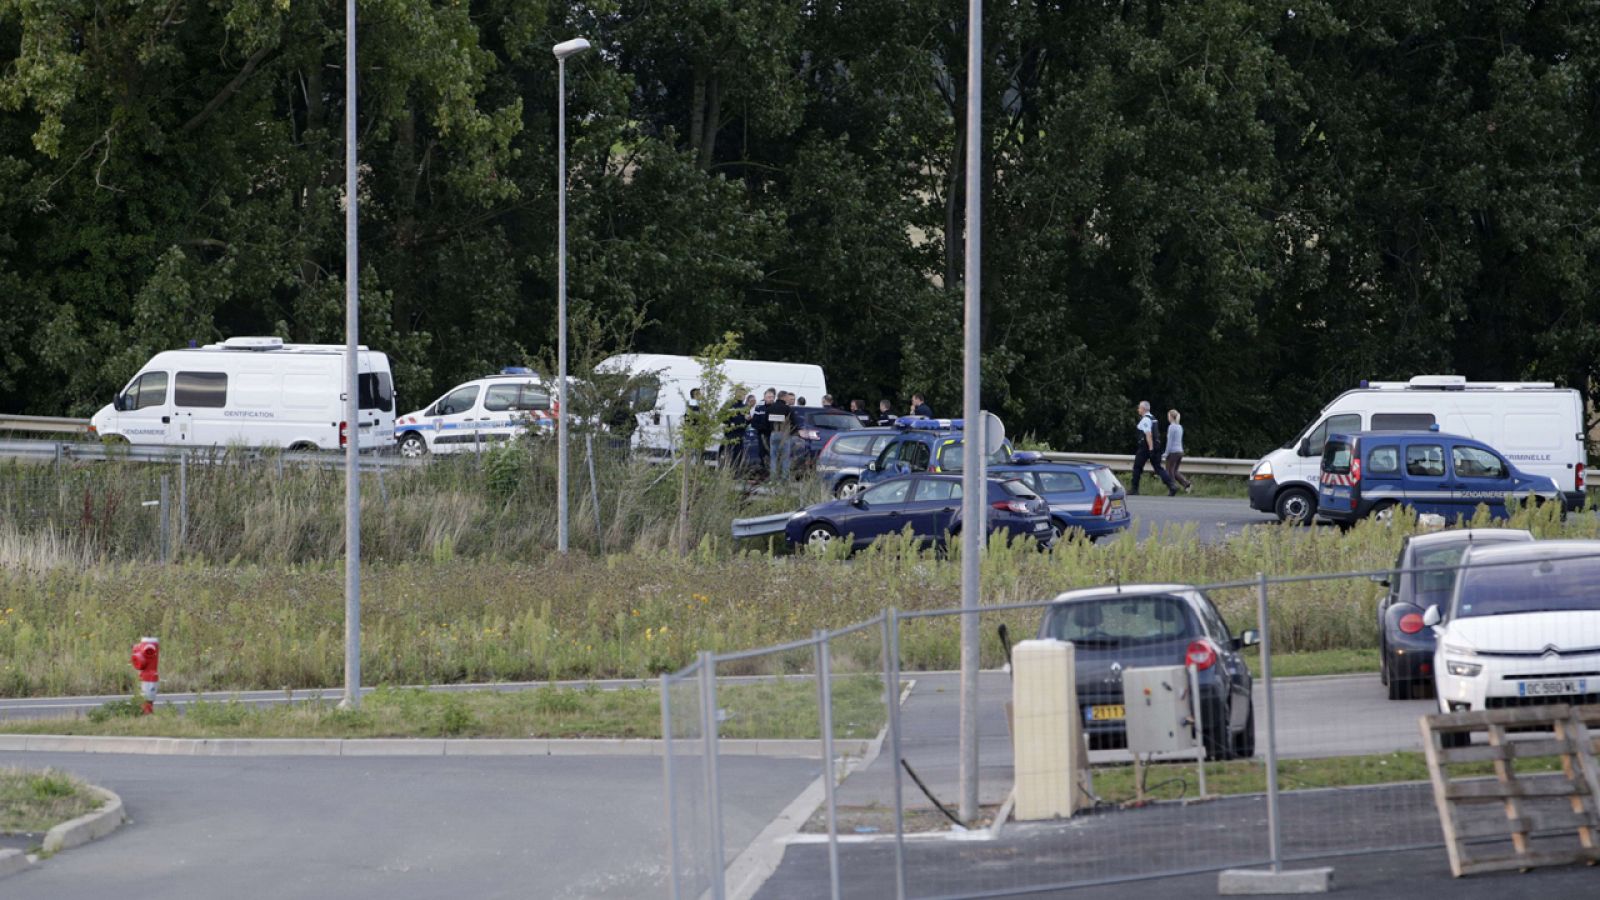 Vehículos y agentes de policía en las inmediaciones del lugar donde se ha producido el tiroteo en Roye, Francia